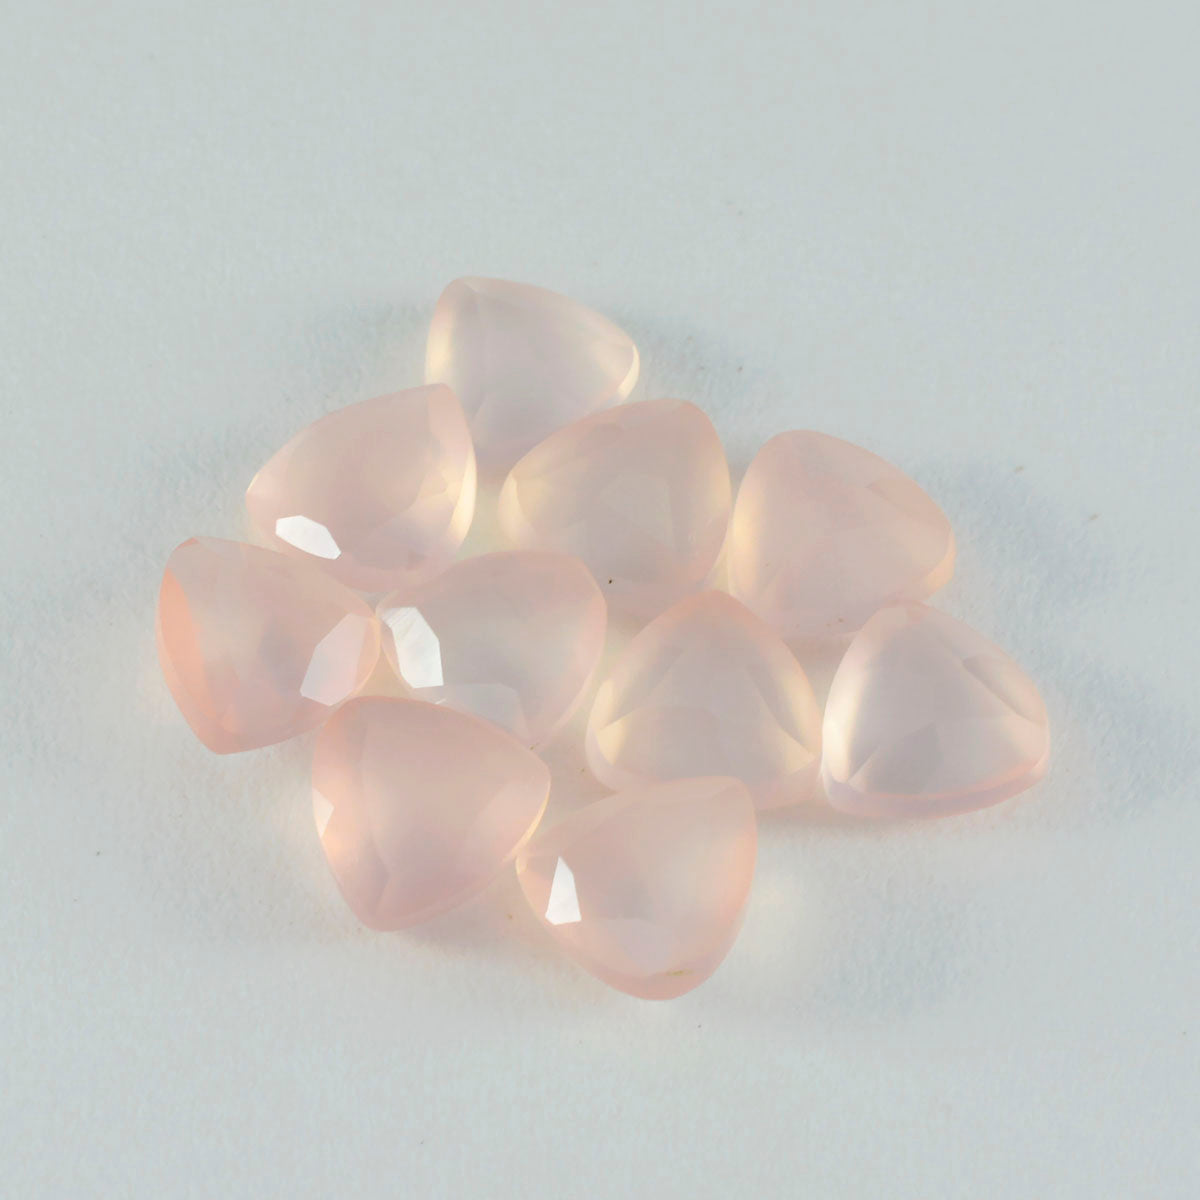 Riyogems 1 pièce de quartz rose à facettes 15x15mm en forme de trillion, pierres précieuses en vrac de qualité attrayante